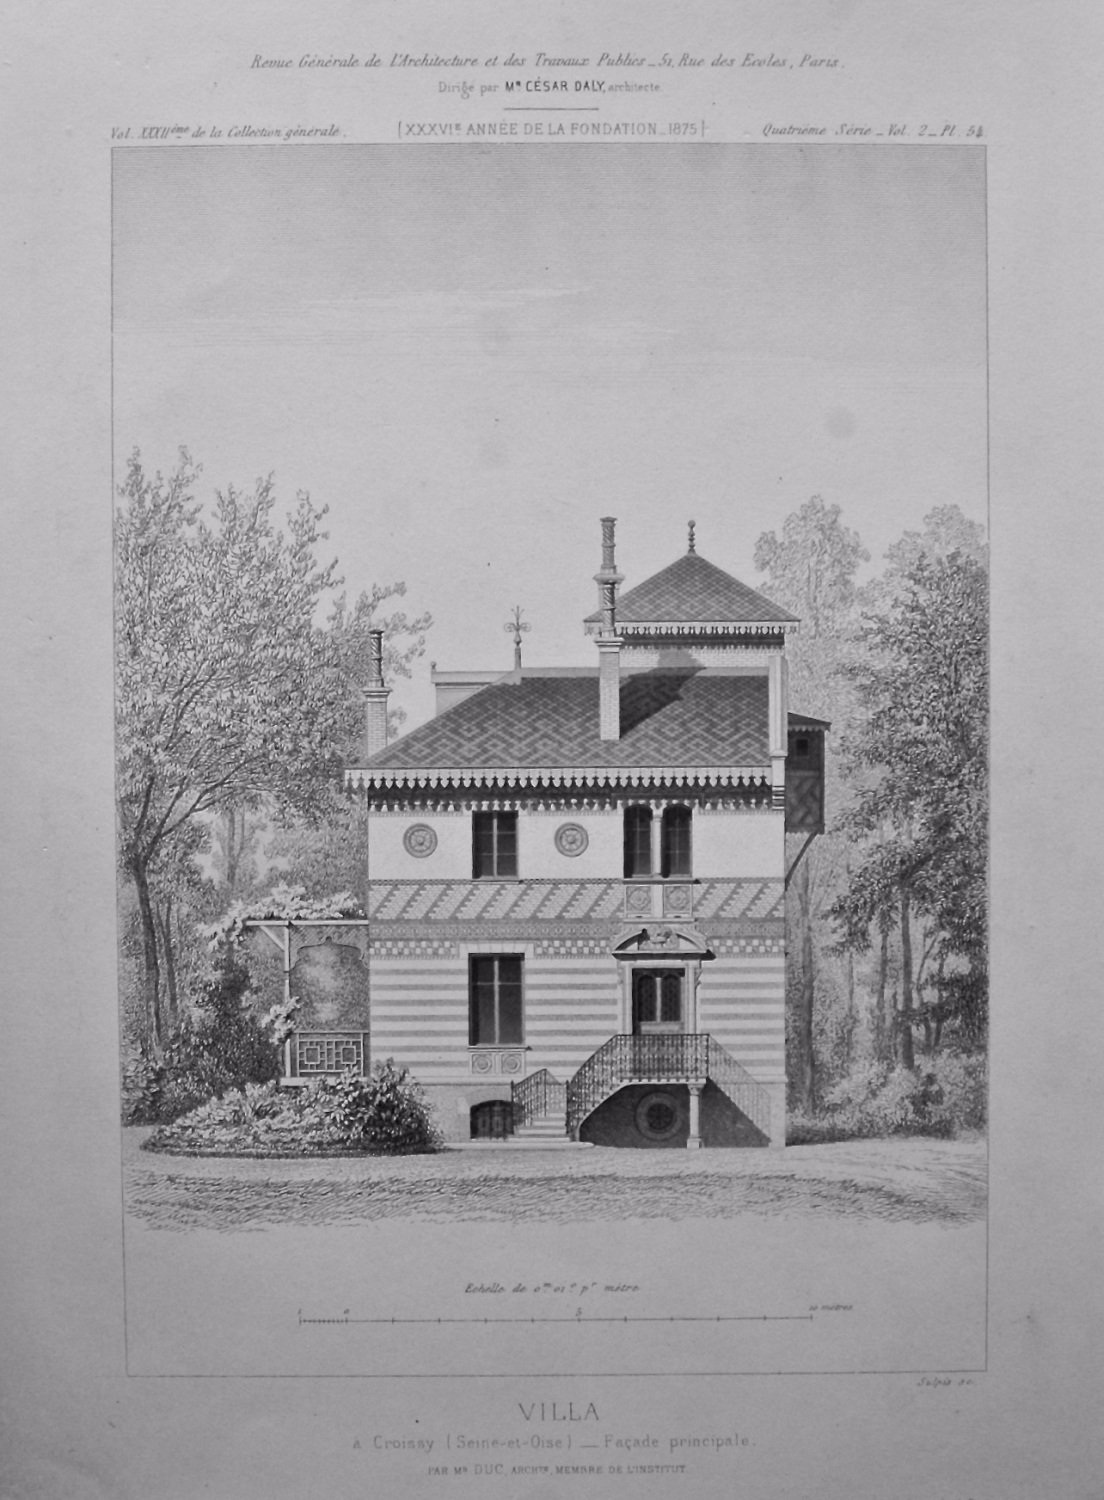 Villa, a Croissy (Seine-et-Oise)_ Facade principale. 1875.